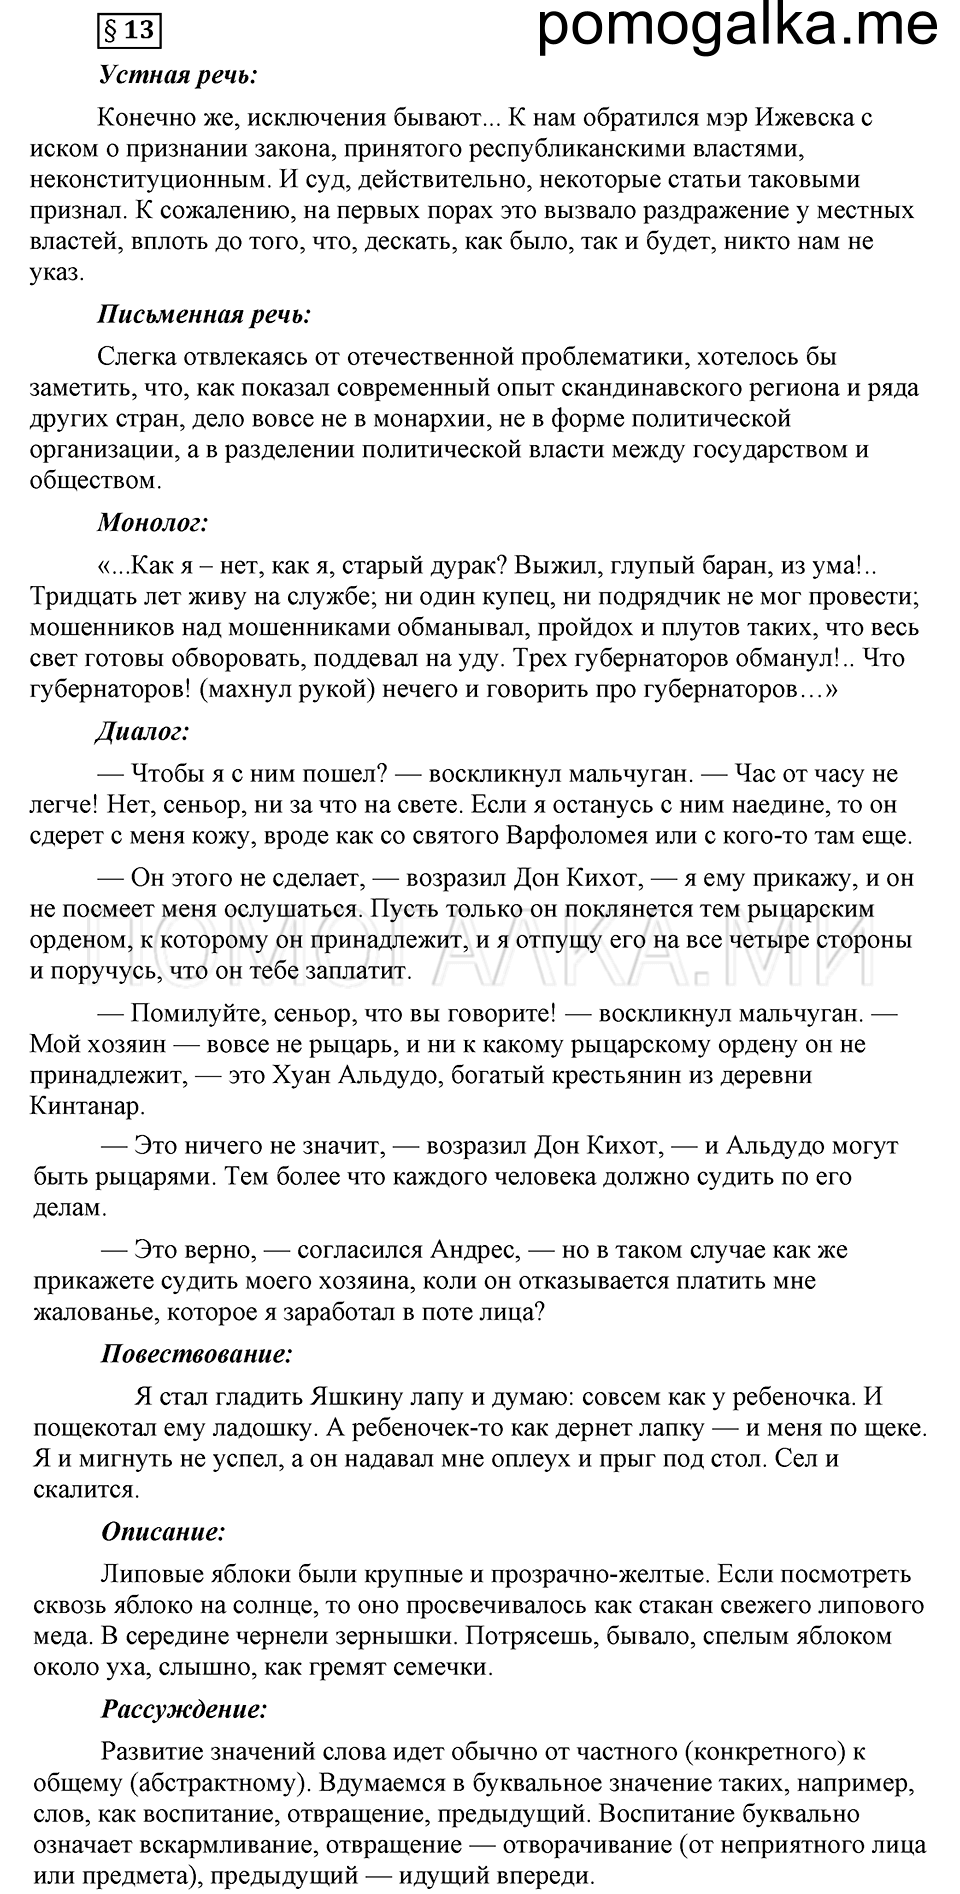 вопросы к §13 русский язык 6 класс Ладыженская, Баранов